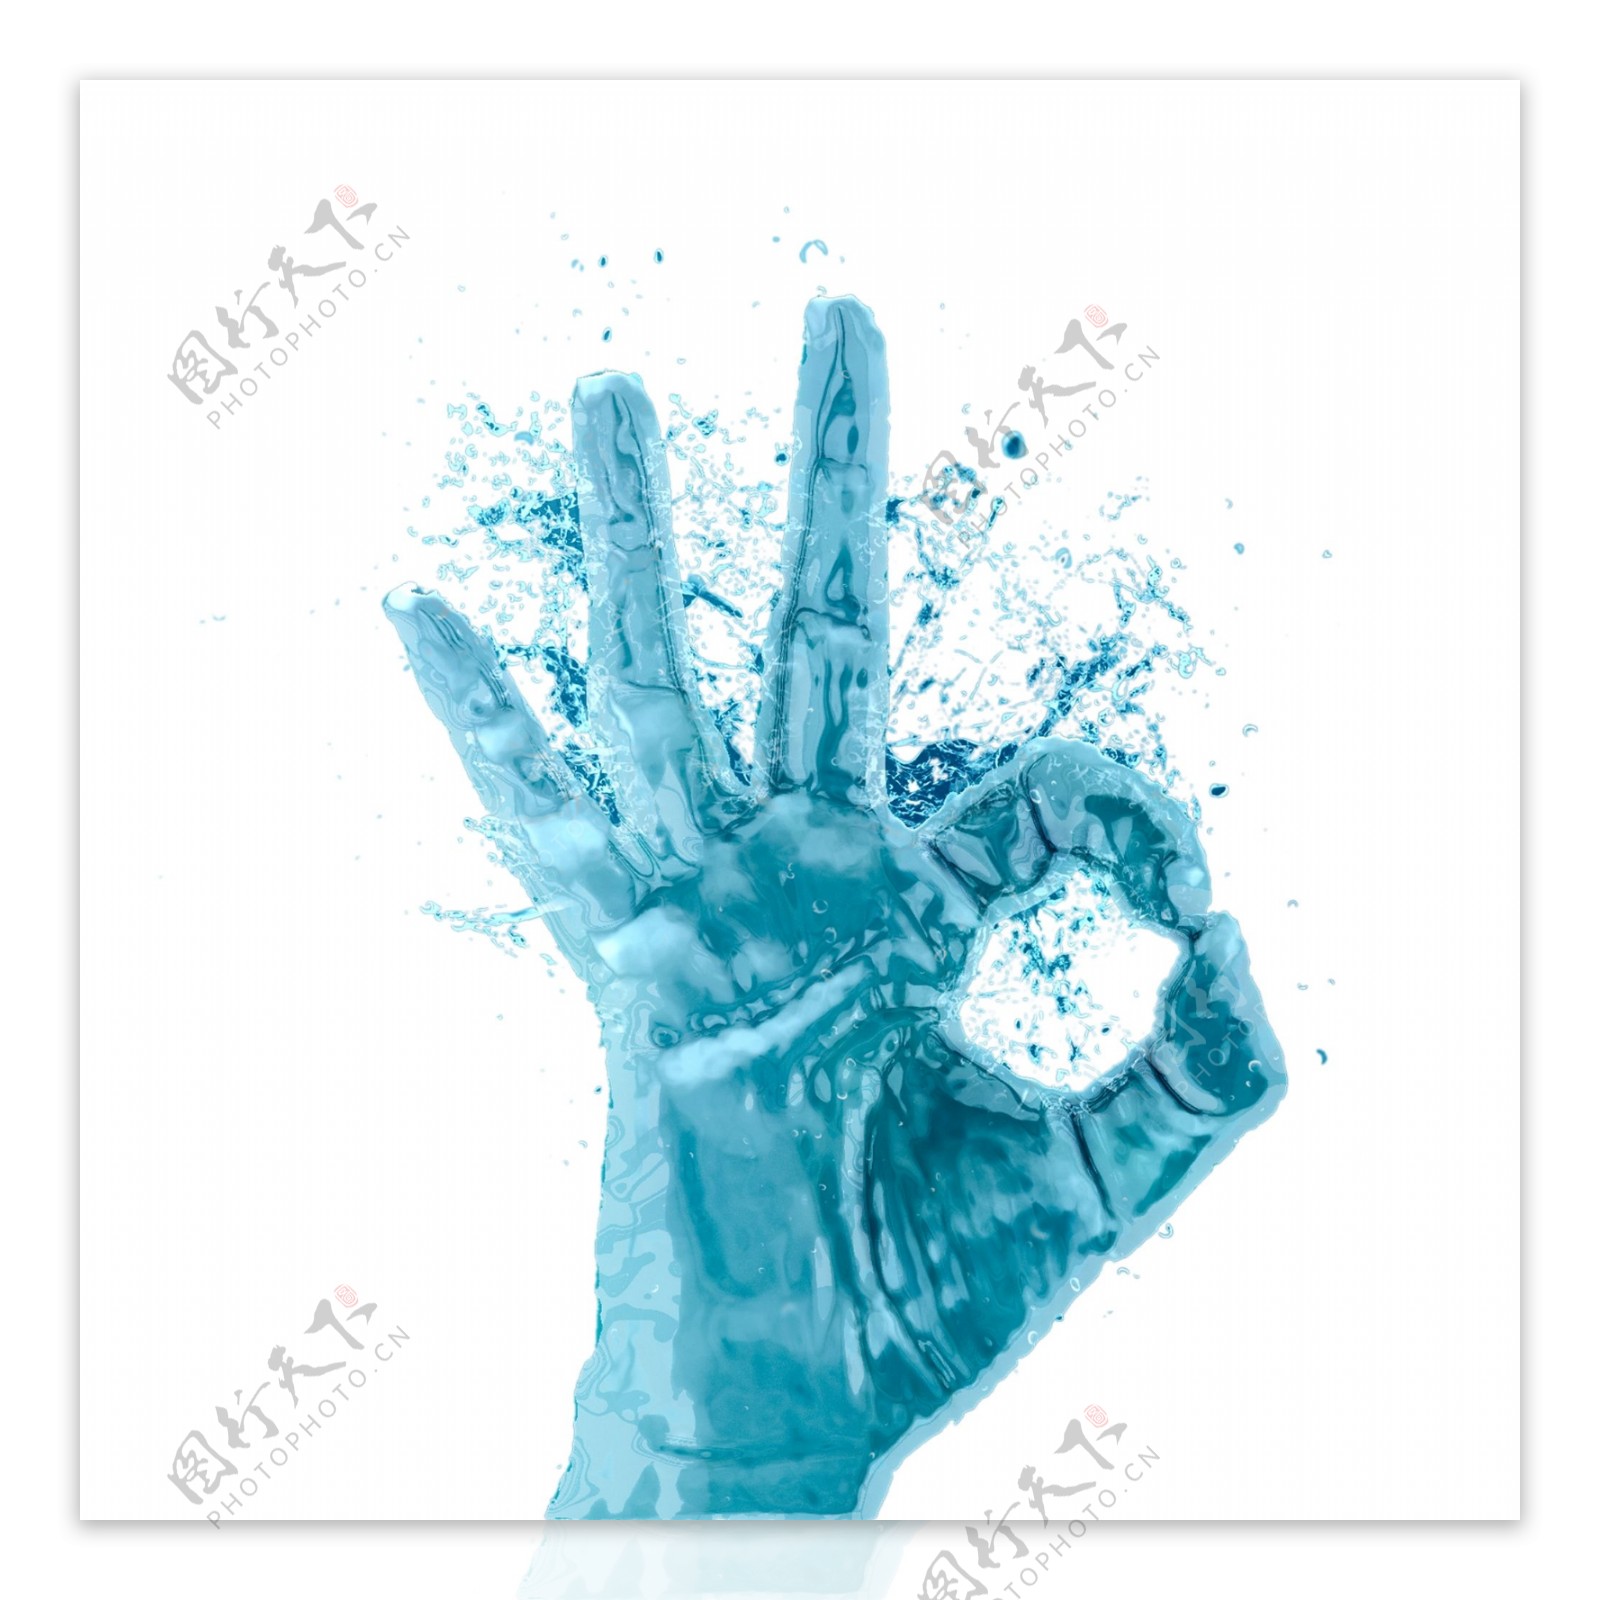 蓝色液体手指OK手势效果图